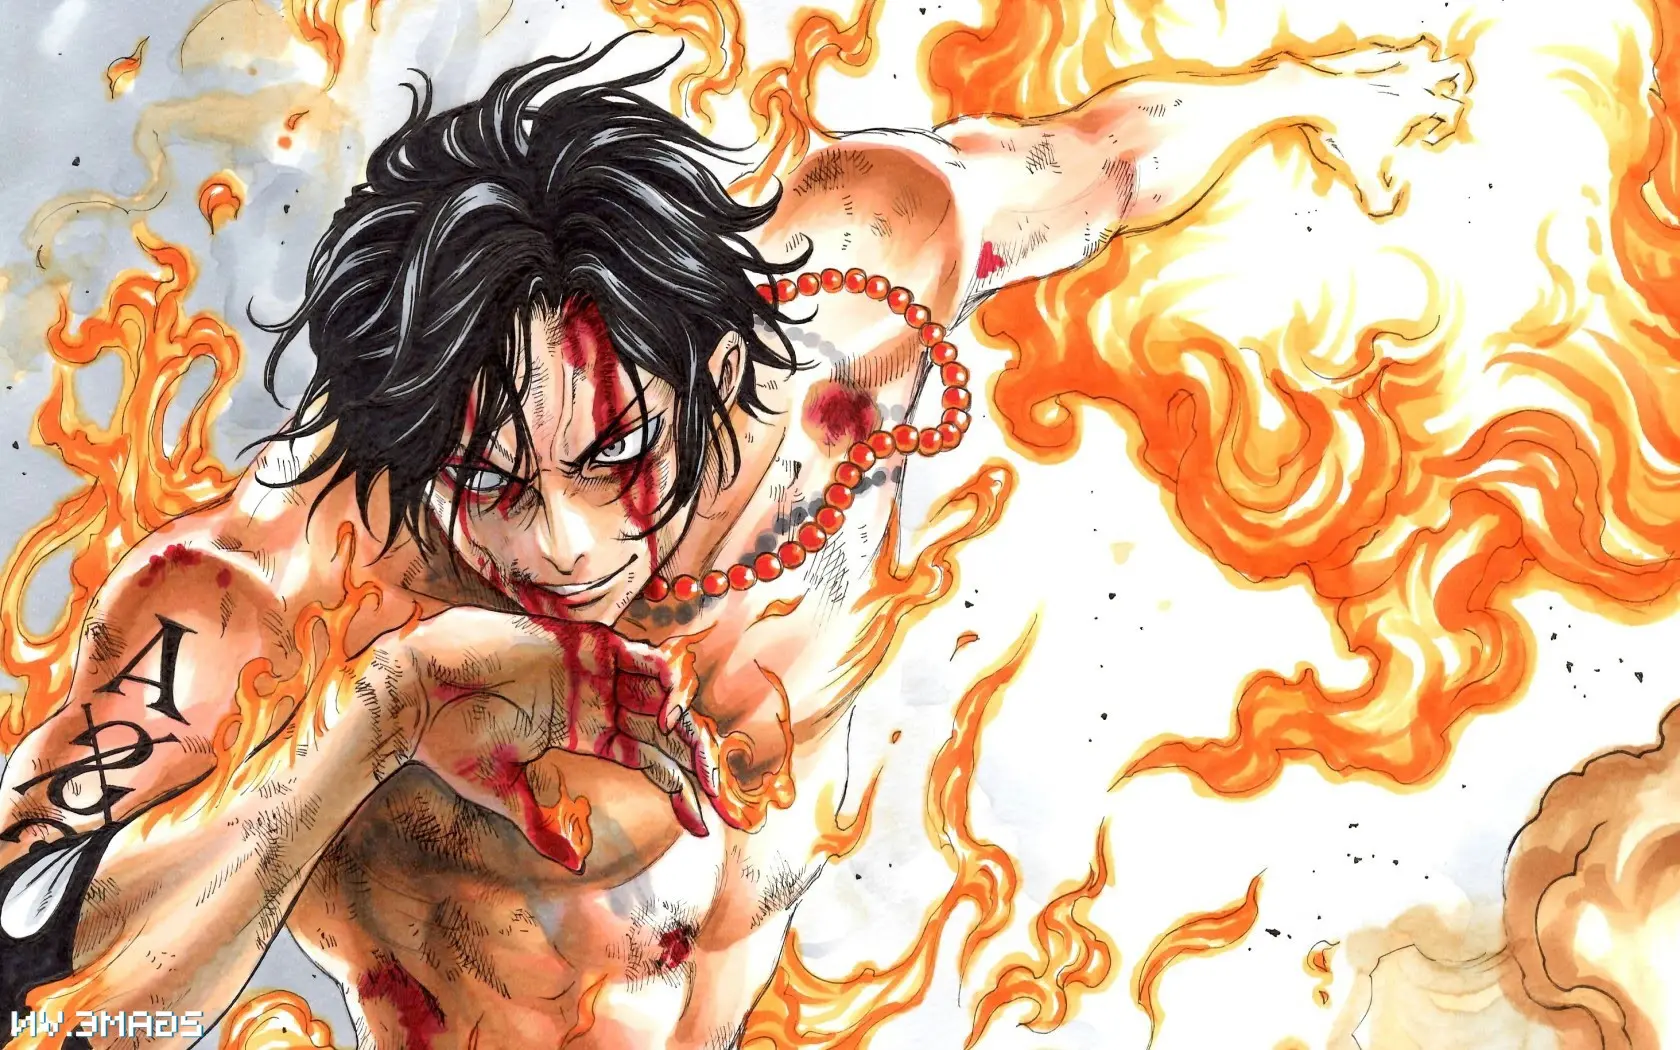 Pirate's Revenge - Penggemar One Piece berdebat karena Ace sekuat Shirohige dan Shanks Berambut Merah